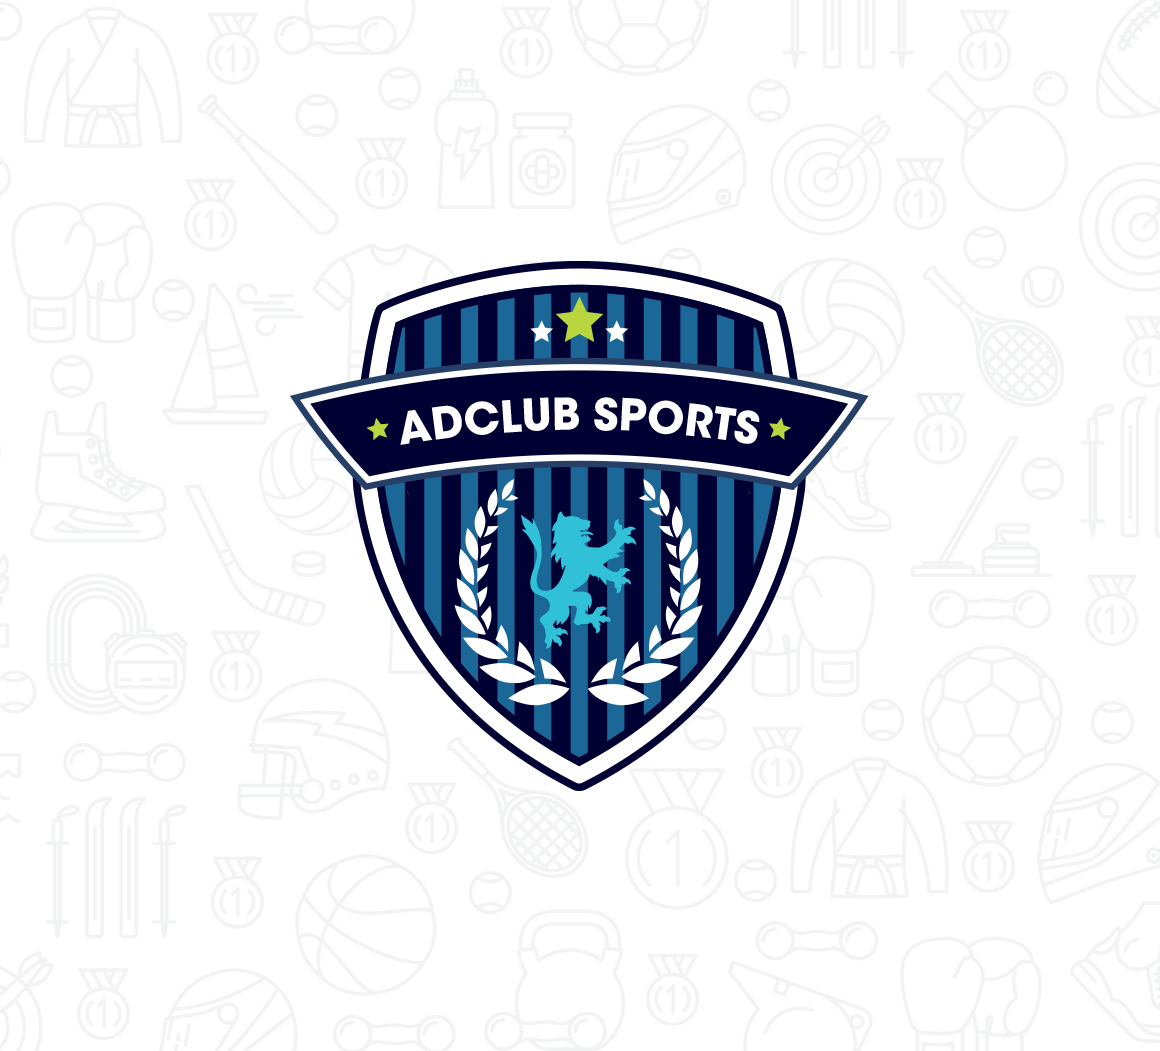 ib-web-feature-1160x1051-adclub-sports